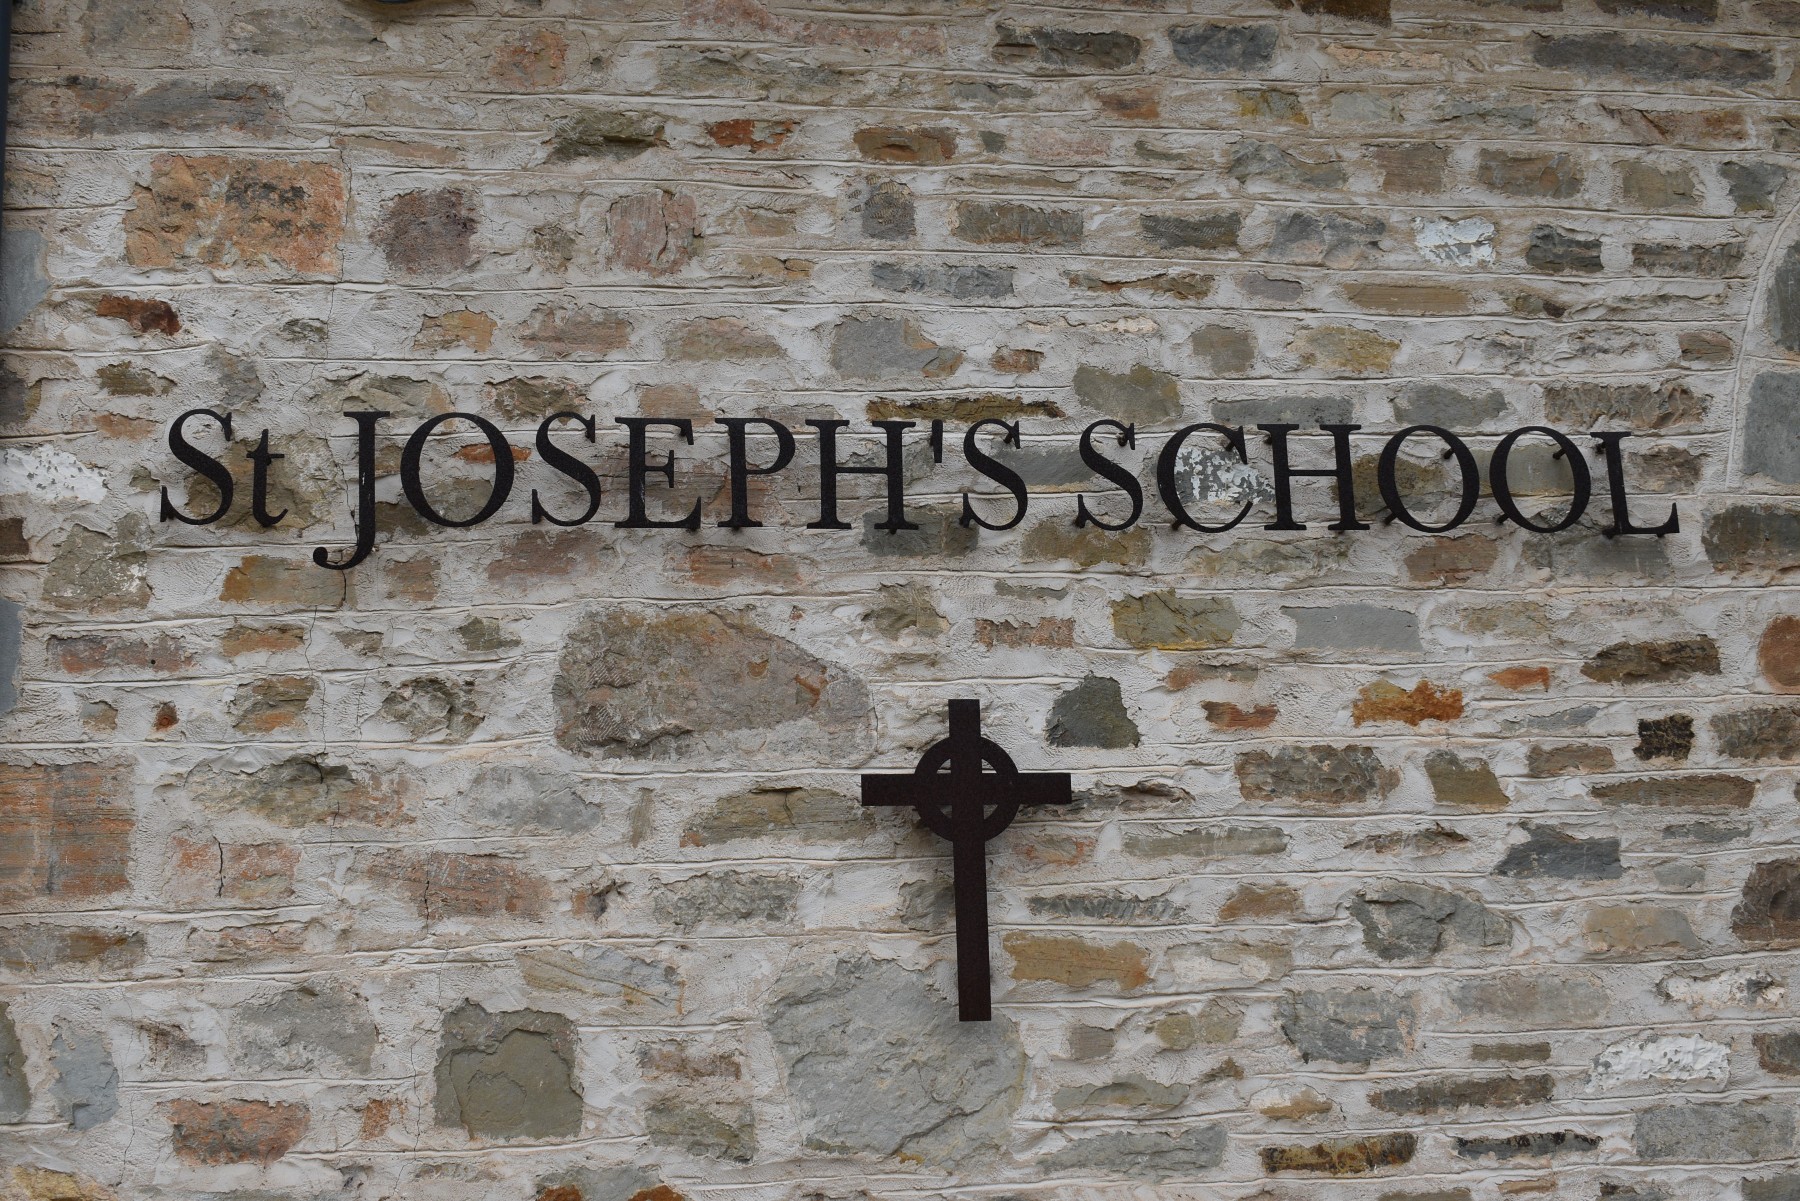 St Josephs School front metal sign resize.jpg